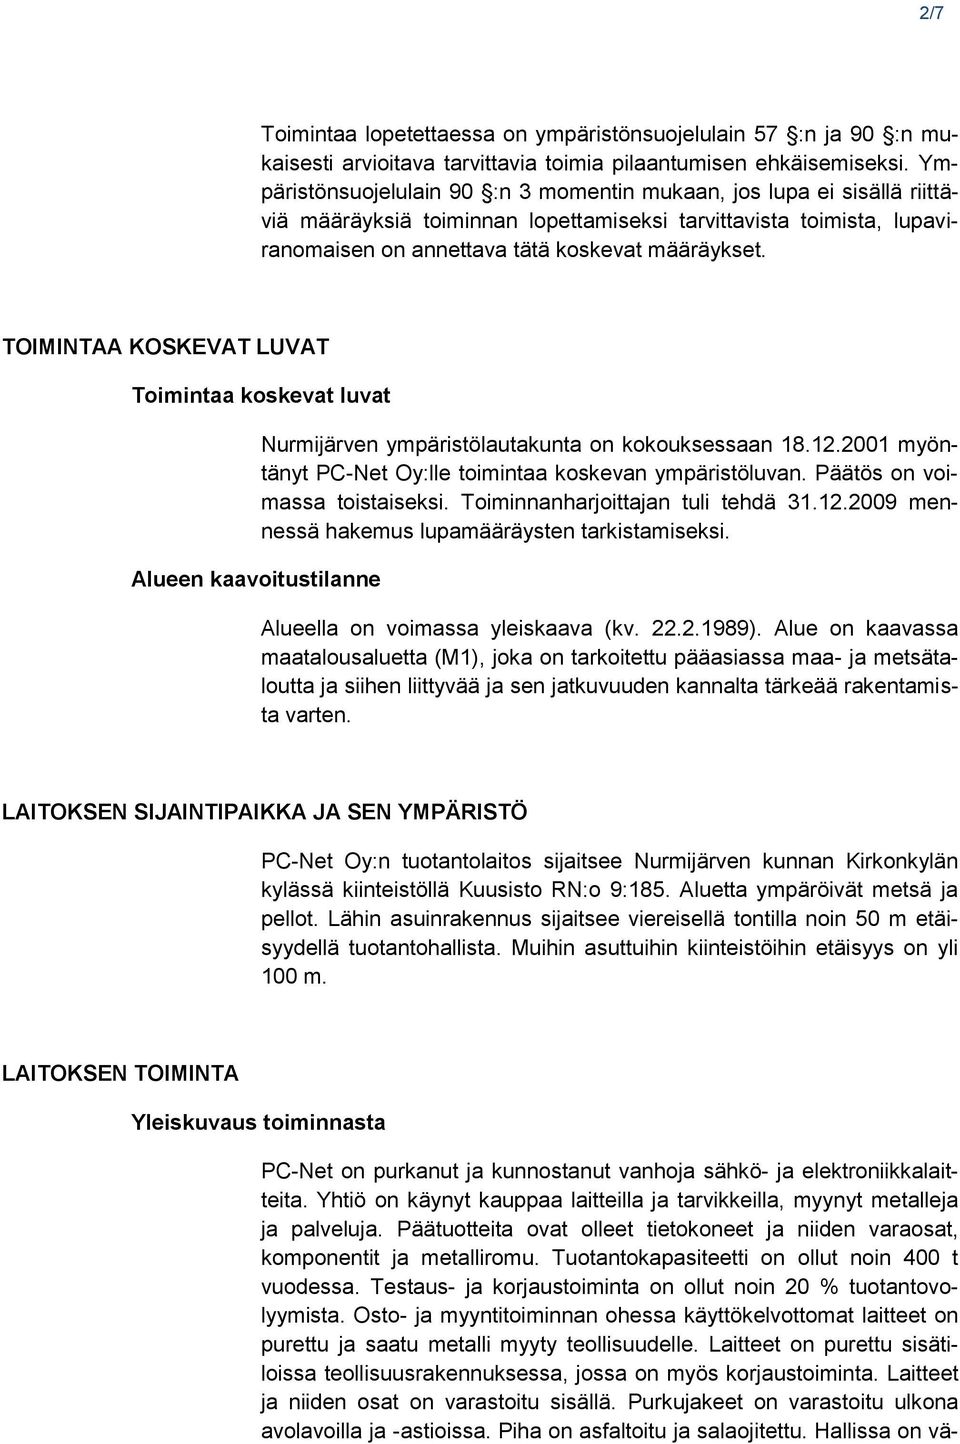 TOIMINTAA KOSKEVAT LUVAT Toimintaa koskevat luvat Alueen kaavoitustilanne Nurmijärven ympäristölautakunta on kokouksessaan 18.12.2001 myöntänyt PC-Net Oy:lle toimintaa koskevan ympäristöluvan.